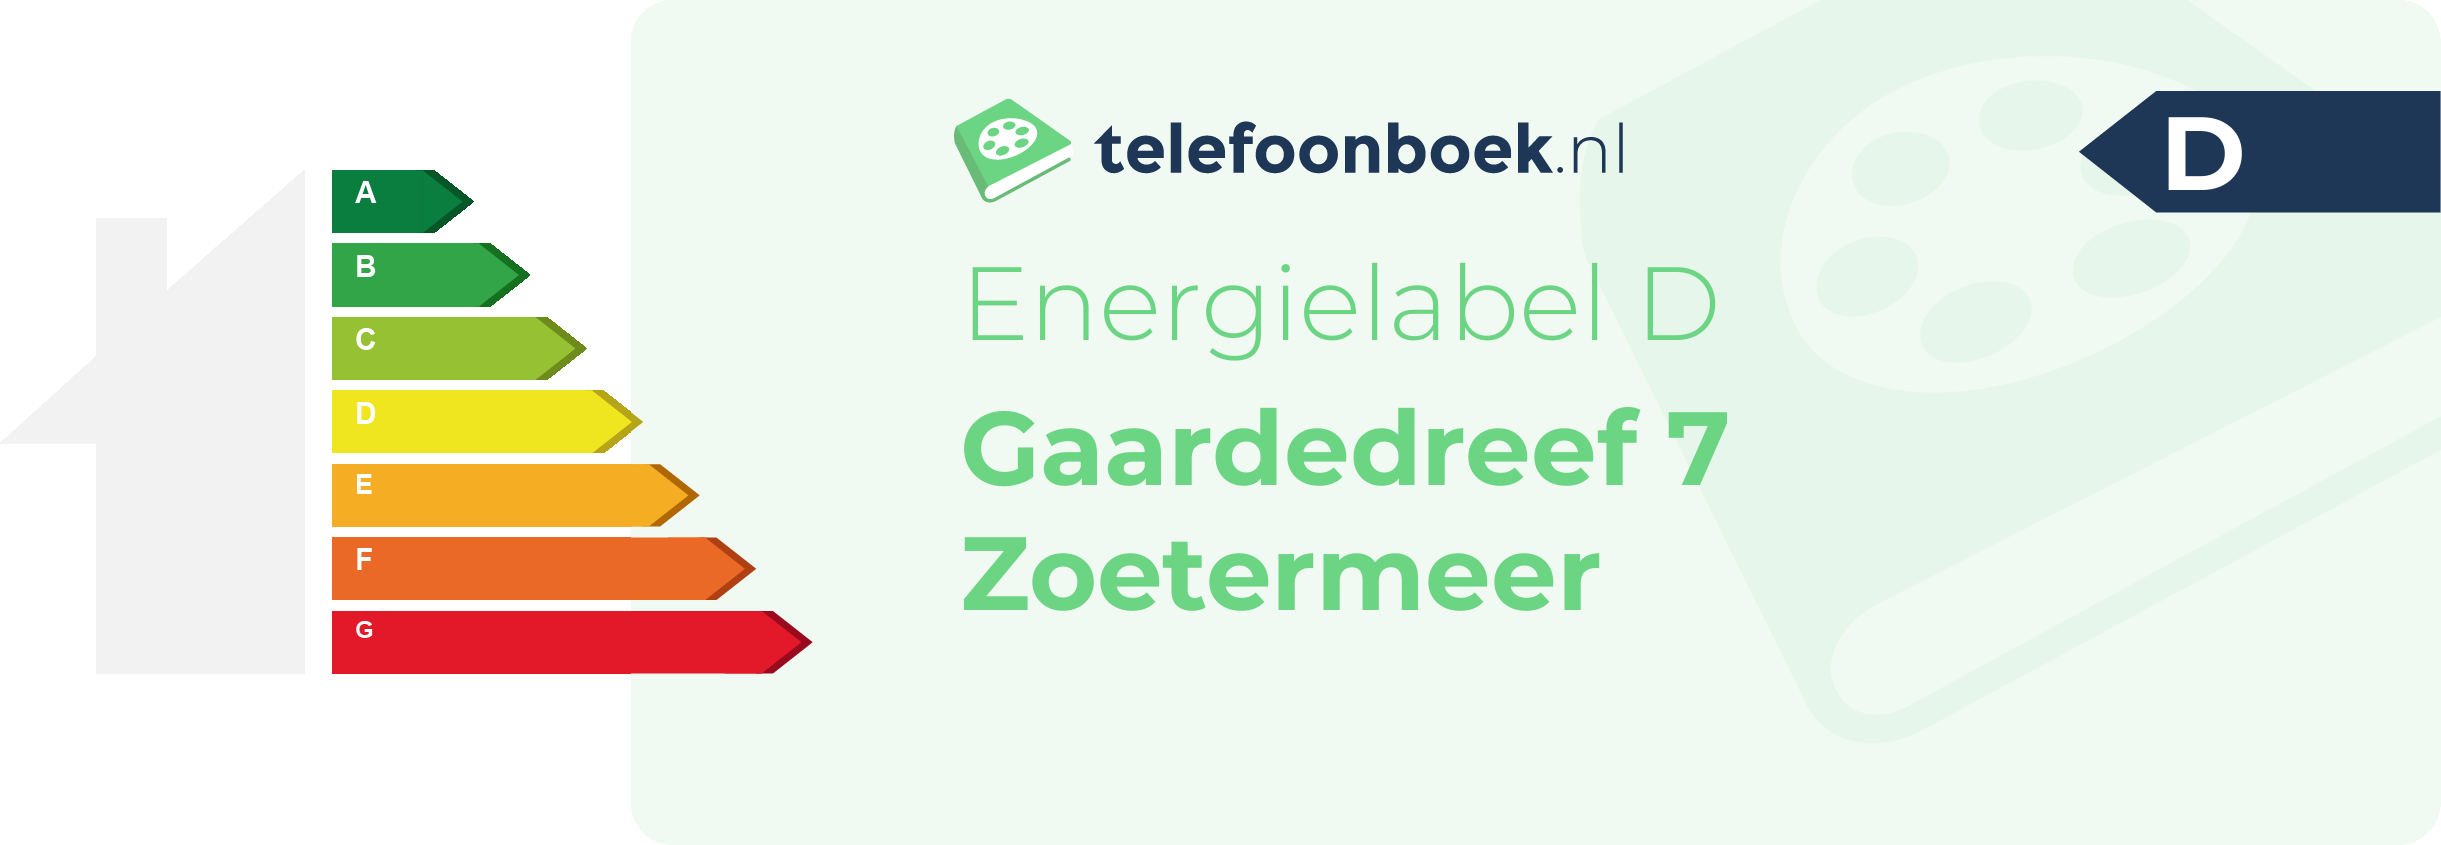 Energielabel Gaardedreef 7 Zoetermeer